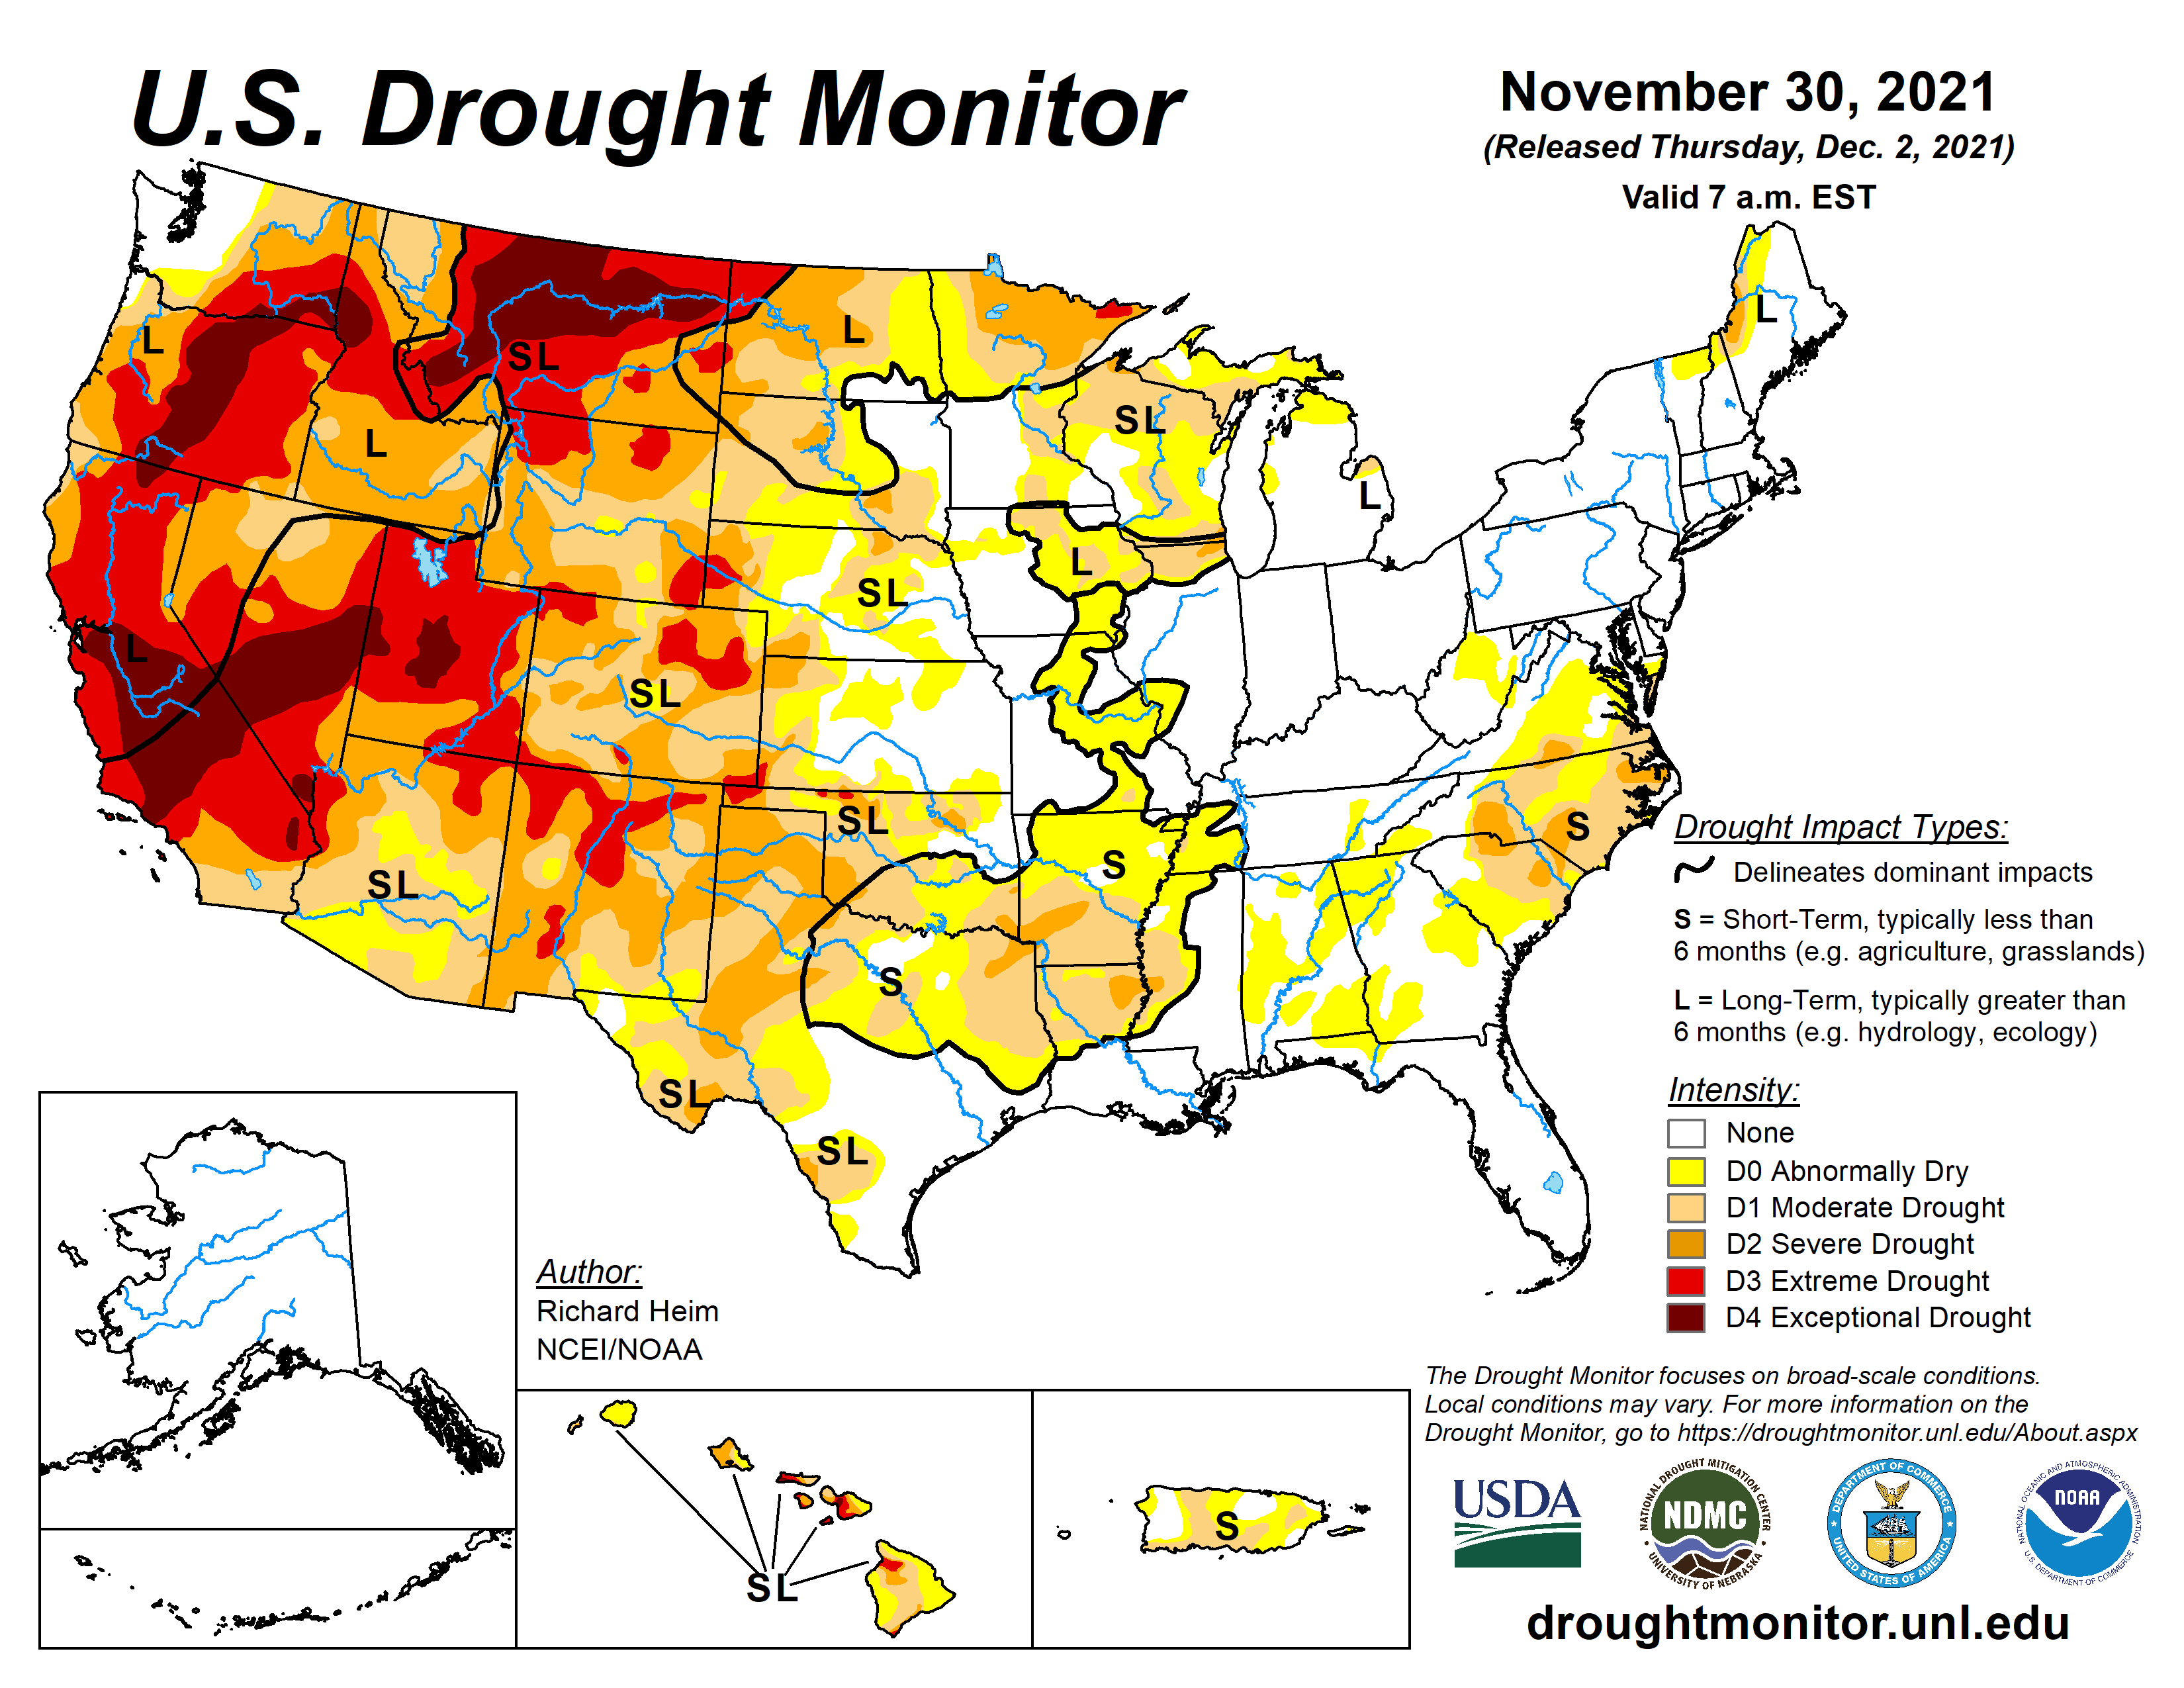 U.S. Drought Monitor, valid November 30, 2021